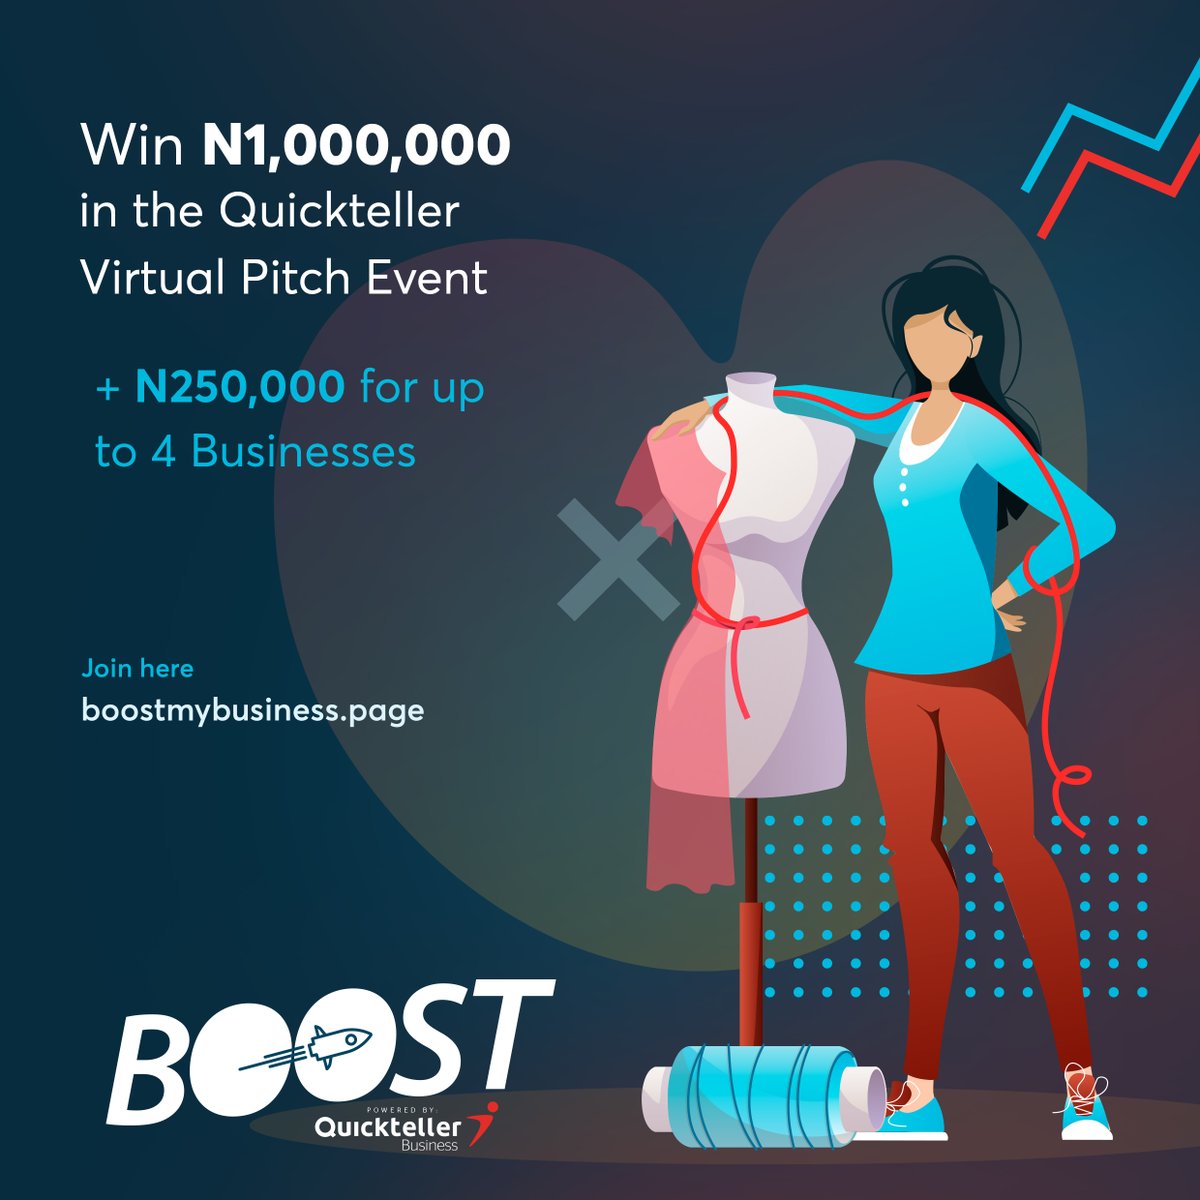 Quickteller Business Boost 2022 for Nigerian Entrepreneurs (₦1,000,000 Grant)